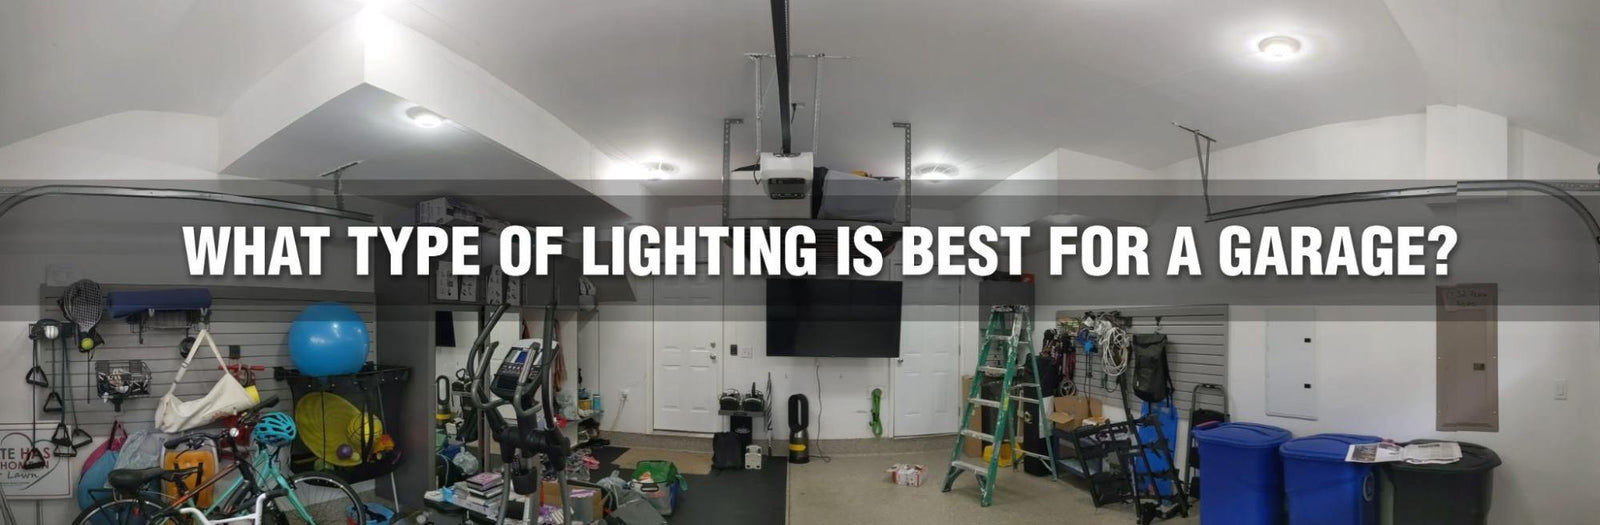 Quel type d'éclairage est le meilleur pour un garage? - STKR Concepts